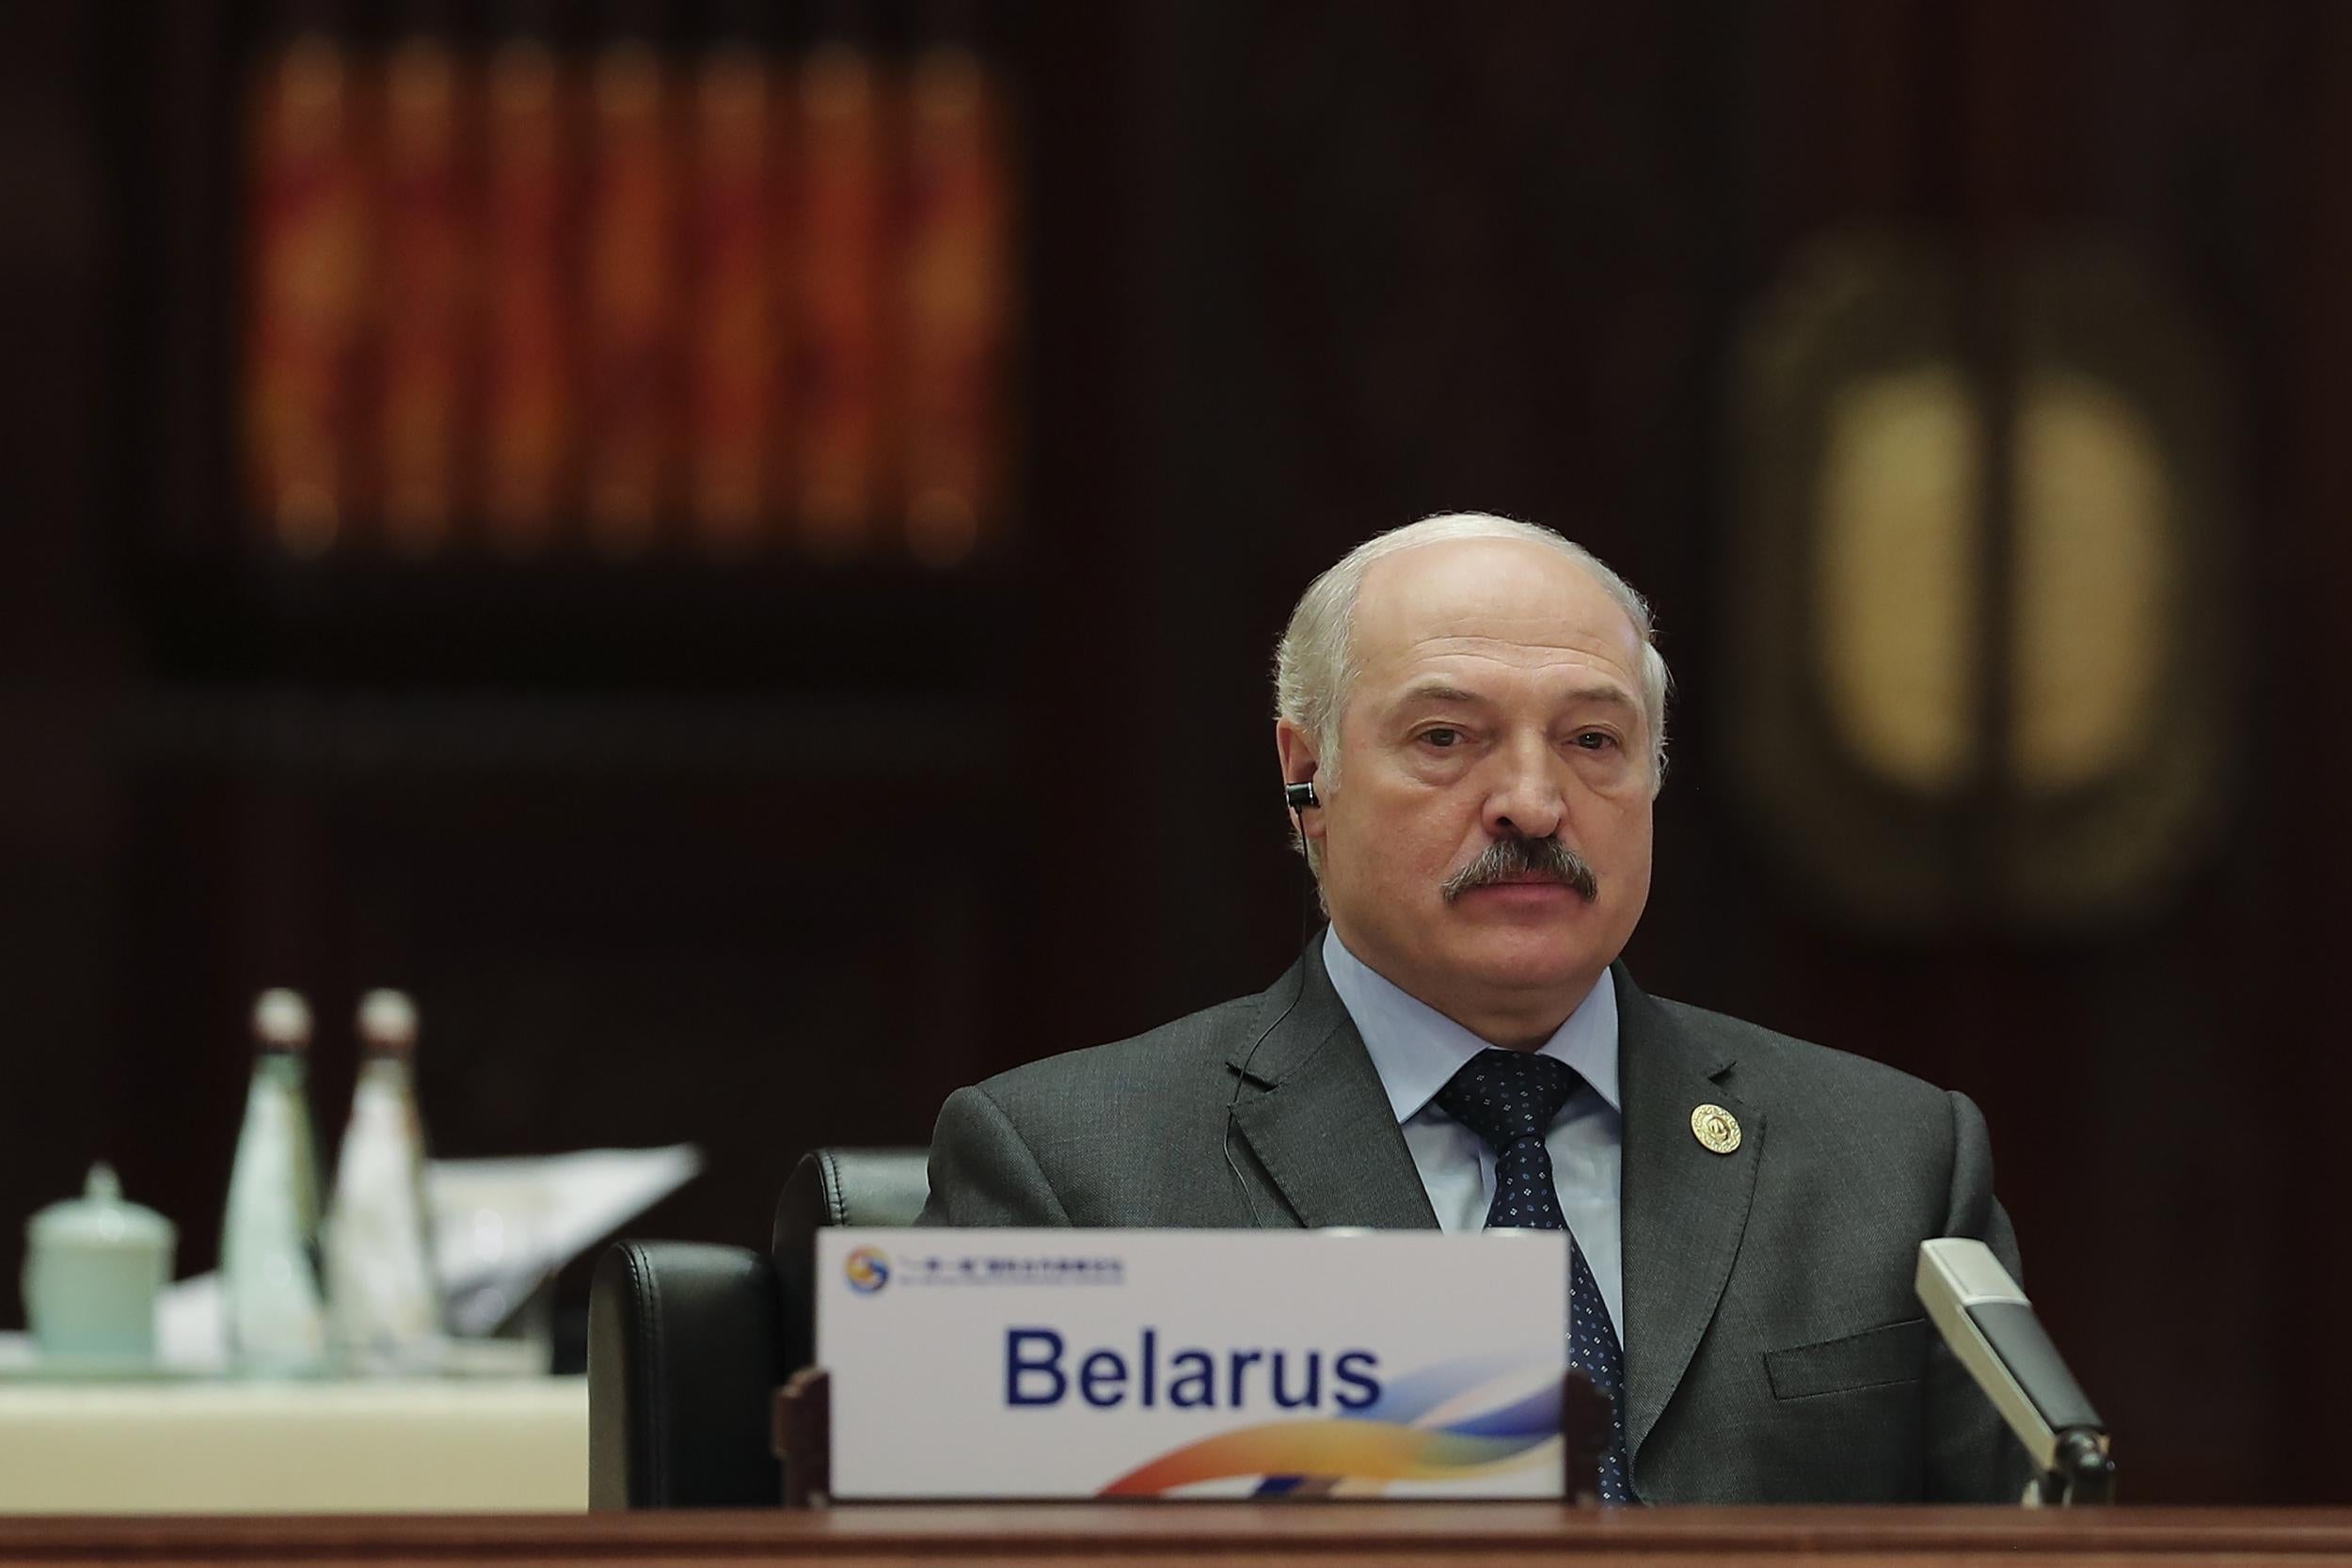 Coronavirus spreads rapidly in Belarus as leader denies pandemic exists